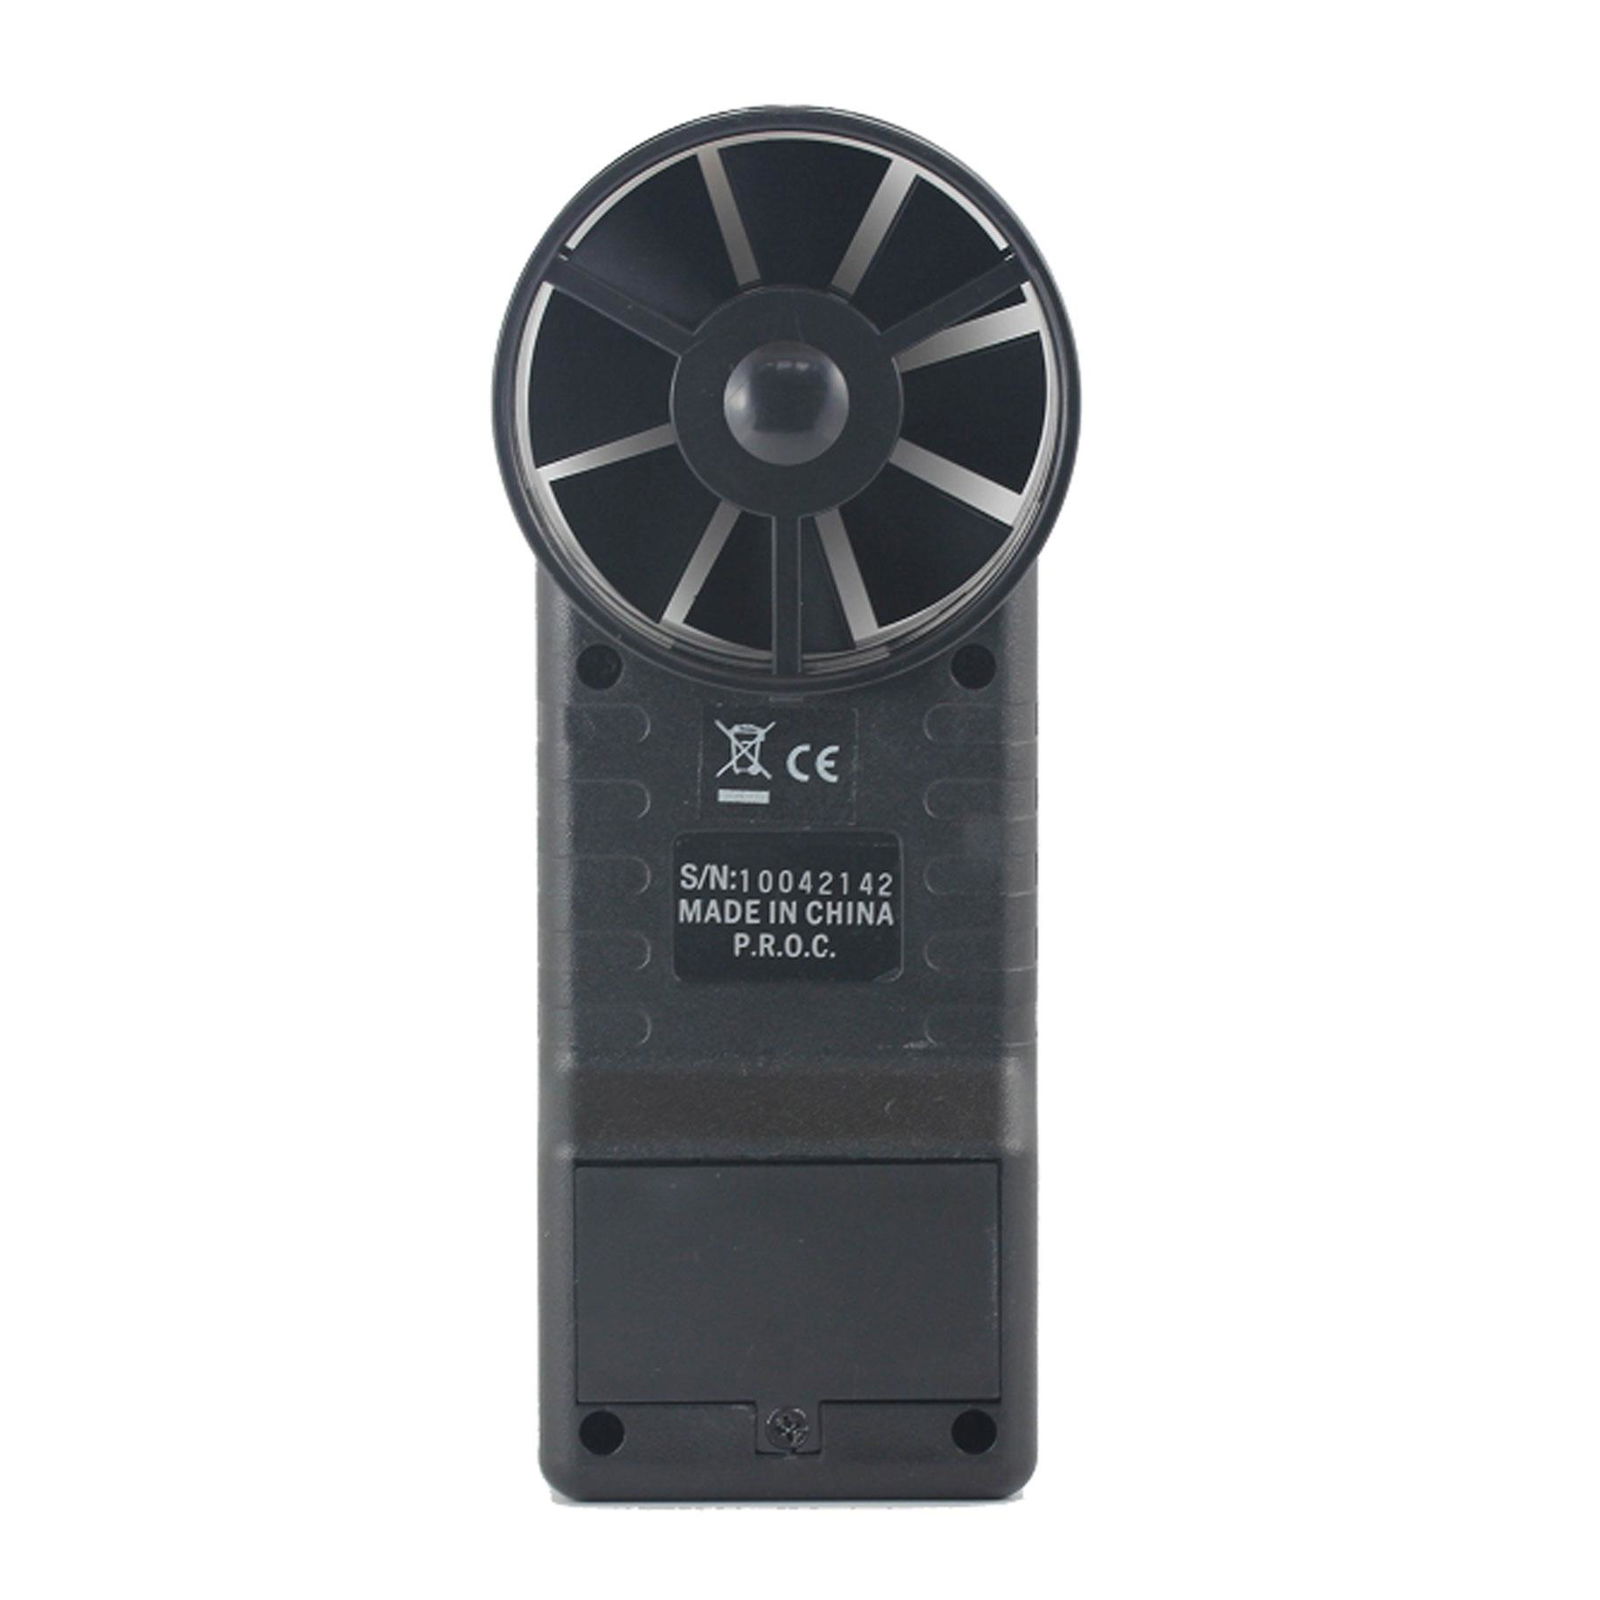 Digital Air Flow Meter AZ8906 Wind Speed Air Volume Meter Temperature Anemometer